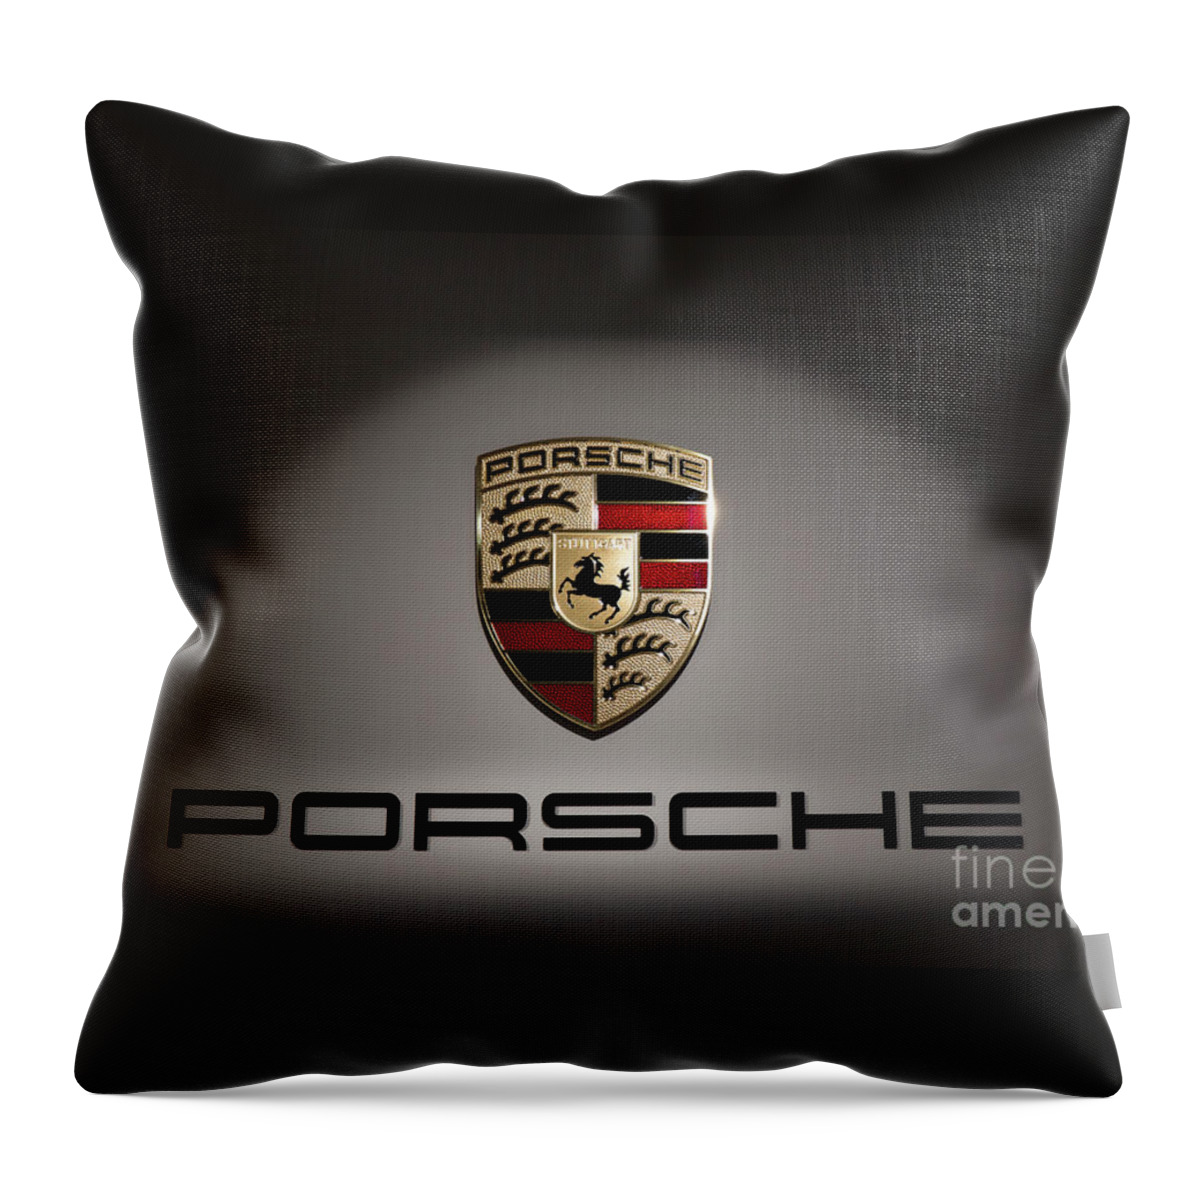 Porsche Logo Throw Pillow featuring the photograph Porsche Car Emblem 2 by Stefano Senise